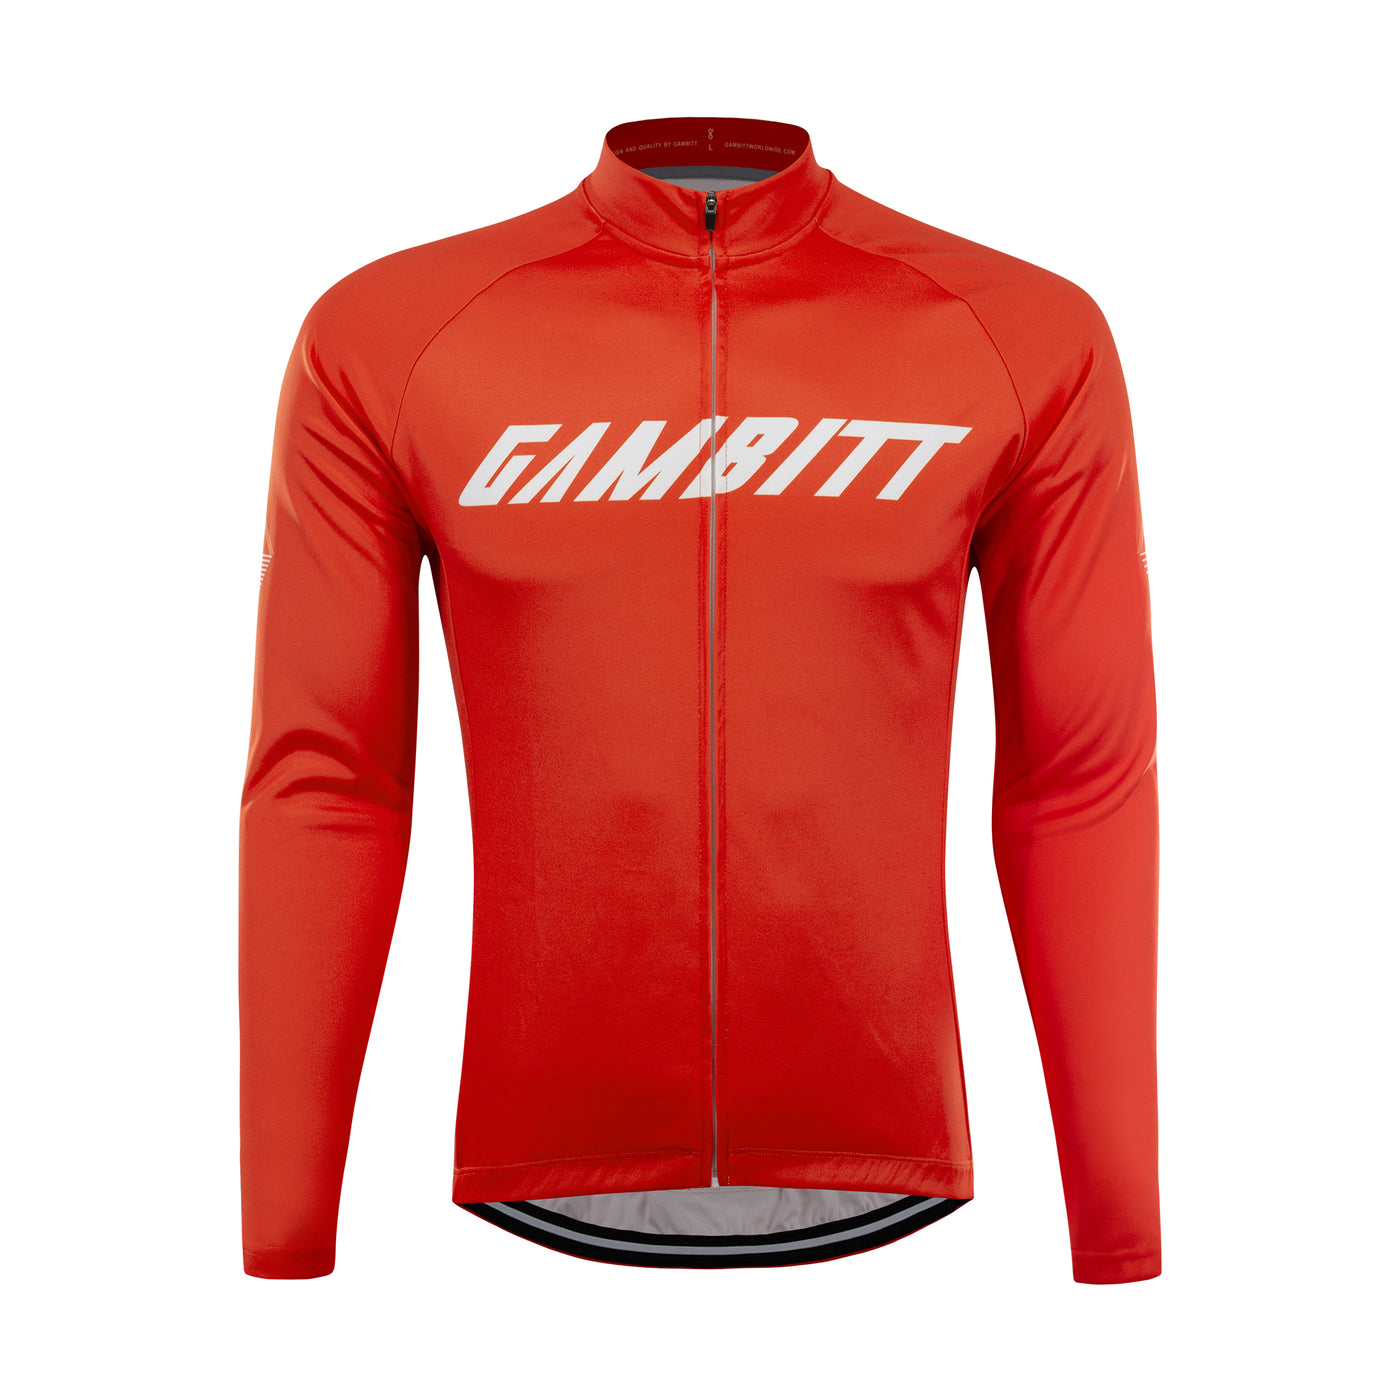 Gambitt Freddo Mens Cycling Jersey (Fiery Red)